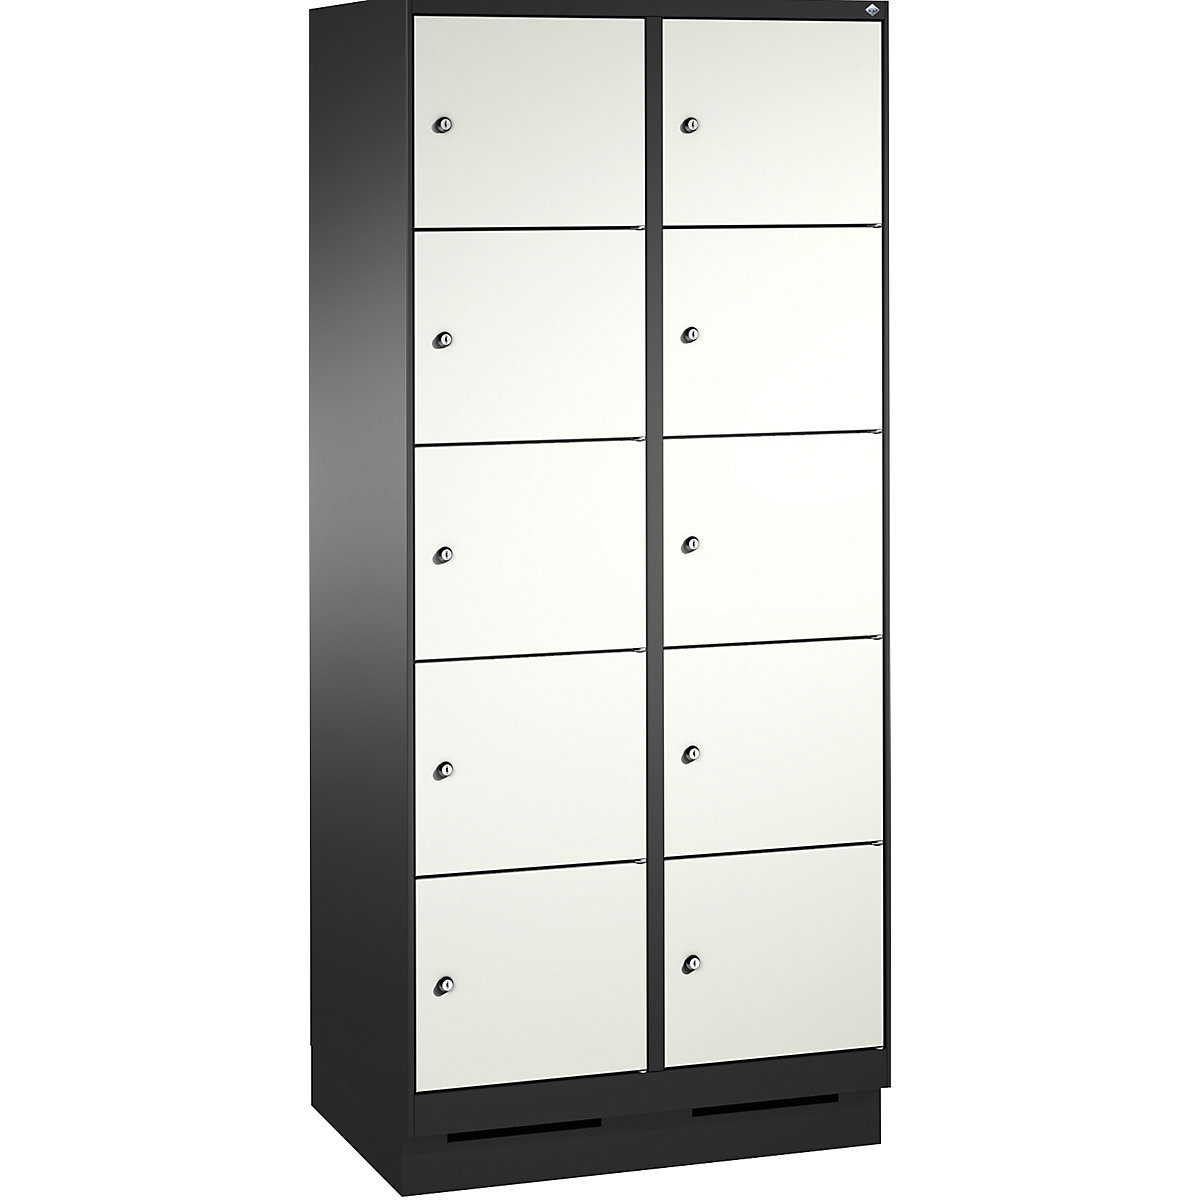 Armoire à casiers sur socle EVOLO – C+P, 2 compartiments, 5 casiers chacun, largeur compartiments 400 mm, gris noir / blanc trafic-13